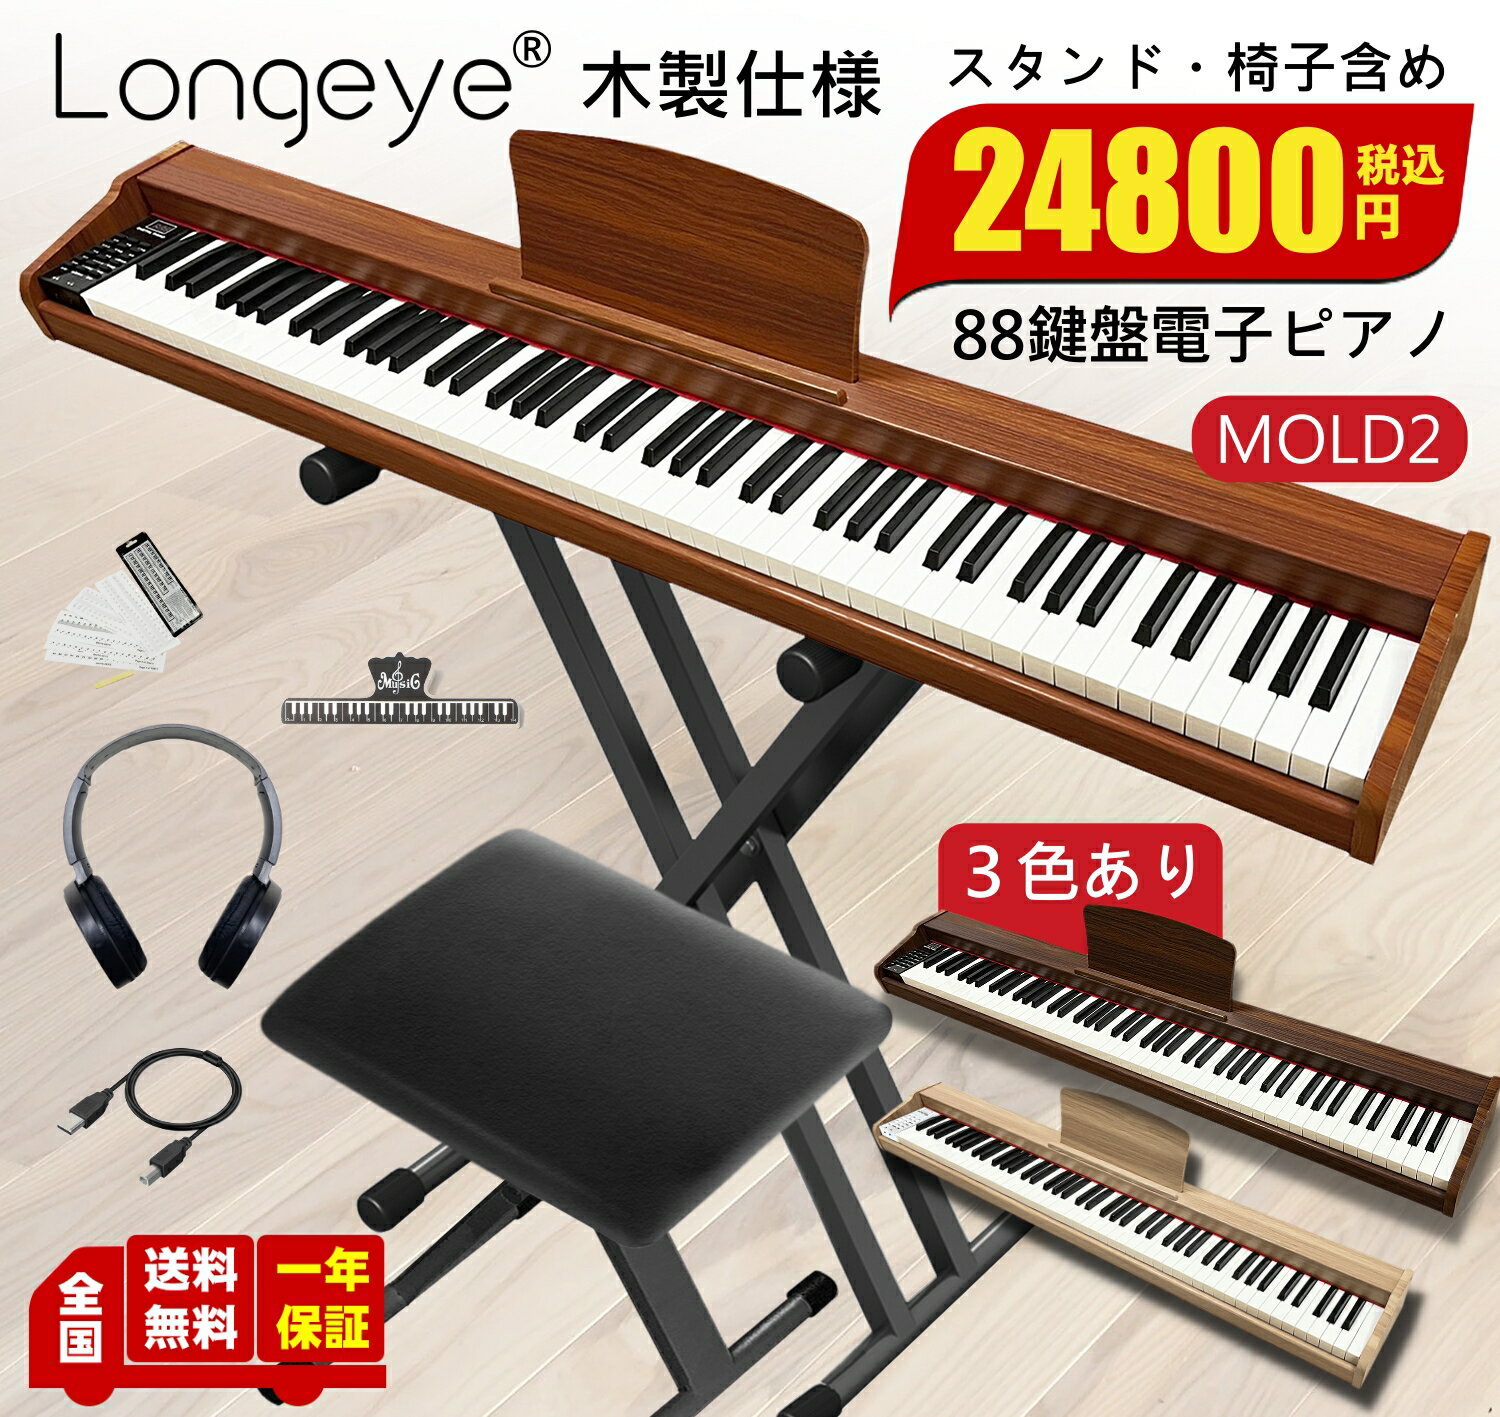 【低評価ゼロ】 木目3色 電子ピアノ 88鍵盤 お得セット 最新モデル Longeye ロンアイ スタンド 椅子 日本語表記パネル 380種類音色 移調 二つヘッドホン同時使用 MIDI端子対応 初心者 日本語説…